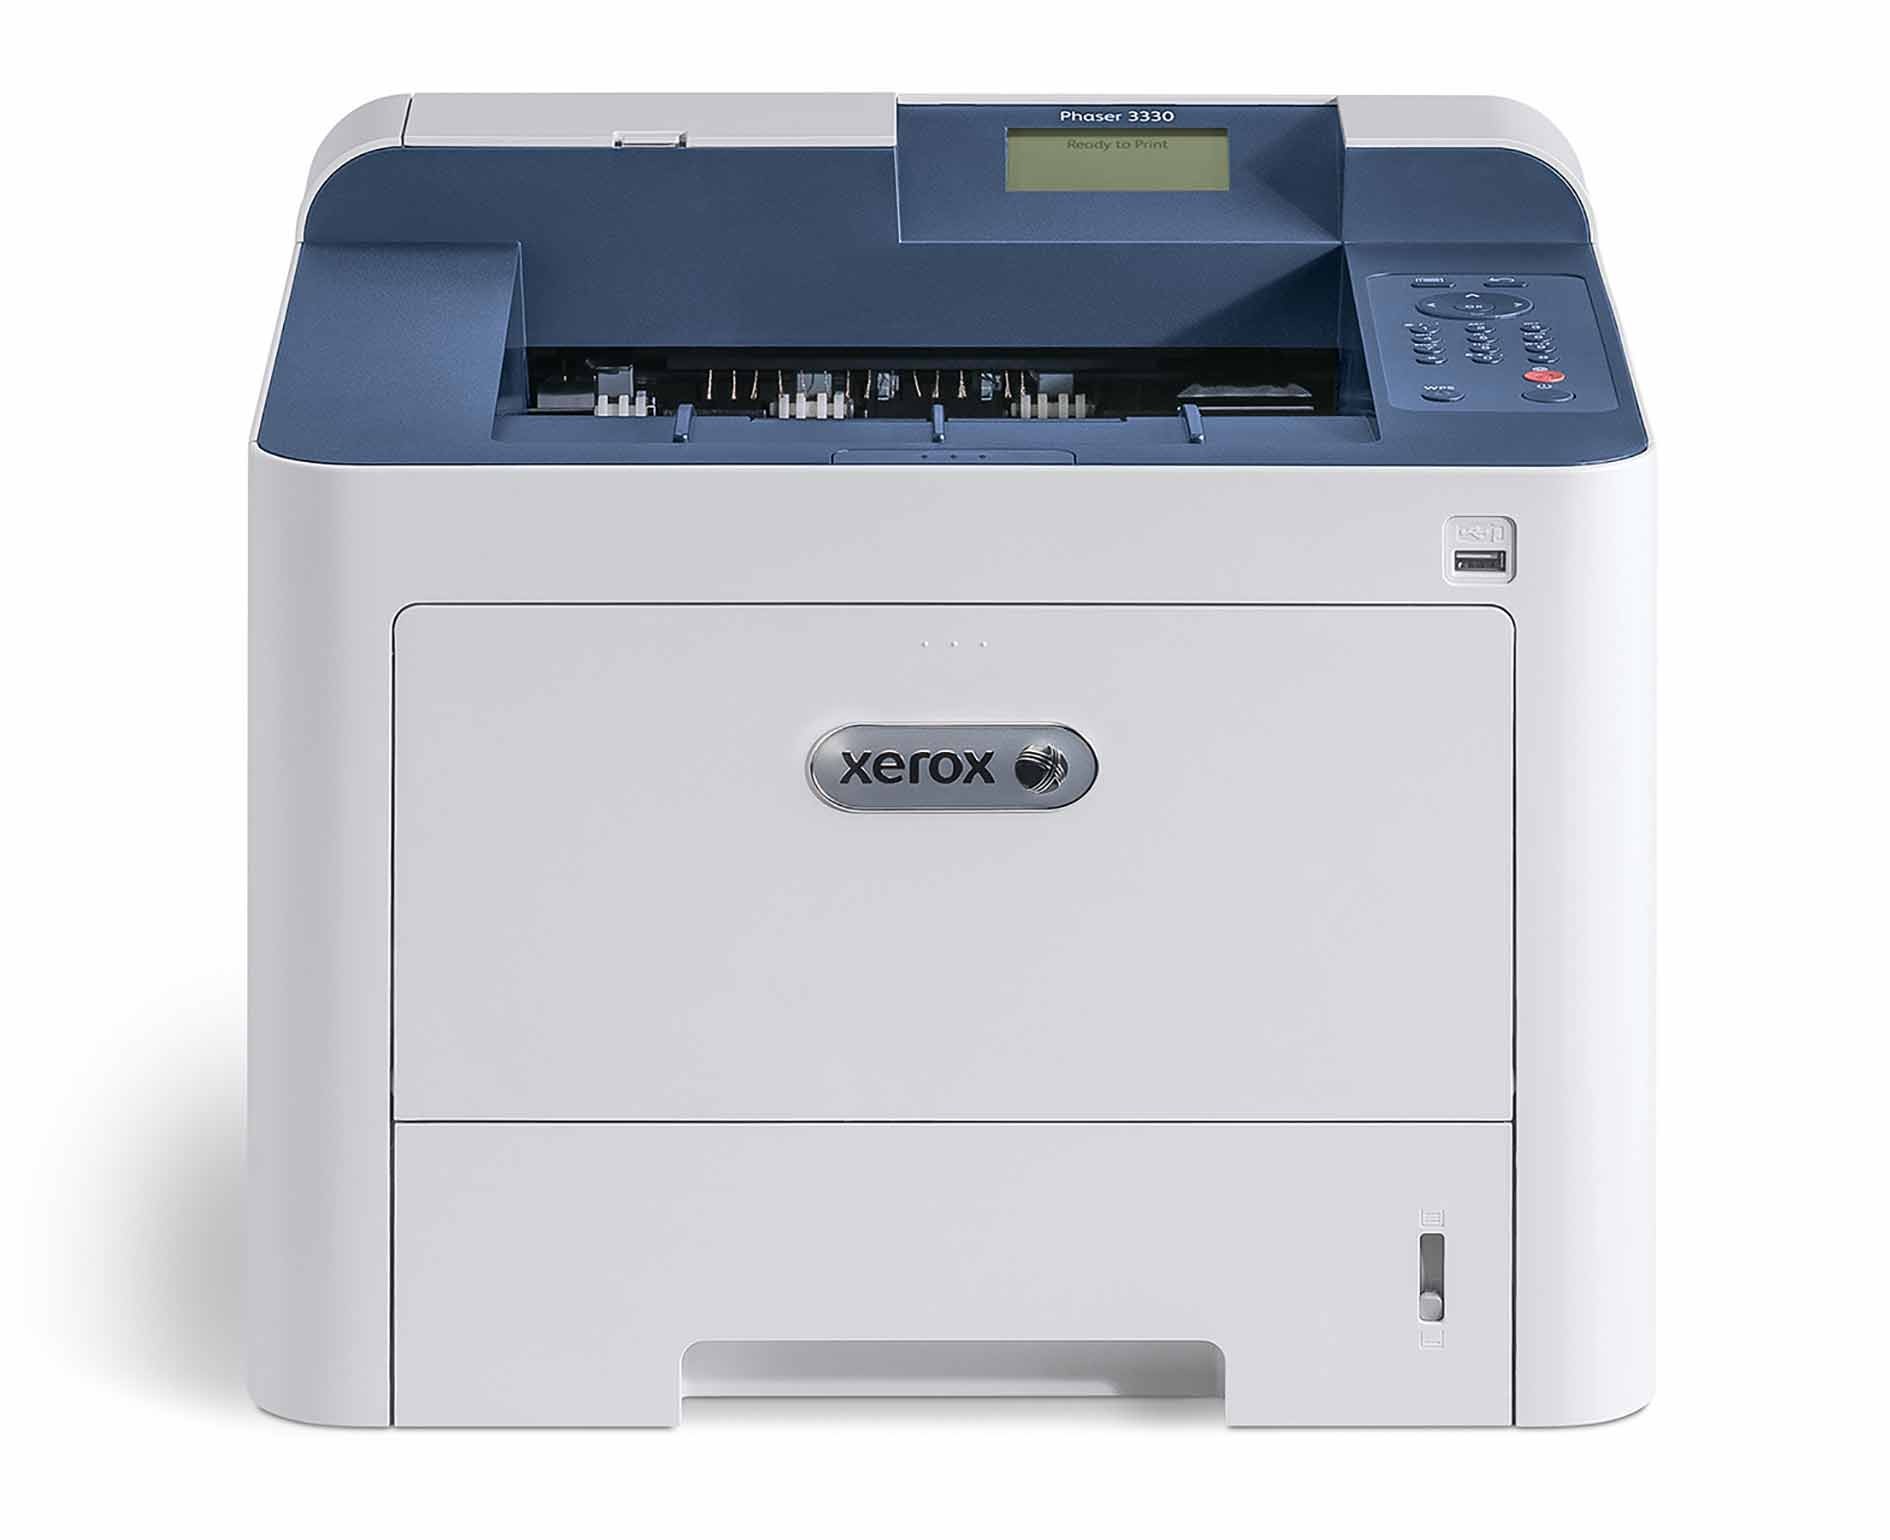 Принтер лазерный Xerox Phaser P3330DNI (3330V_DNI) A4 Duplex WiFi - фото 1